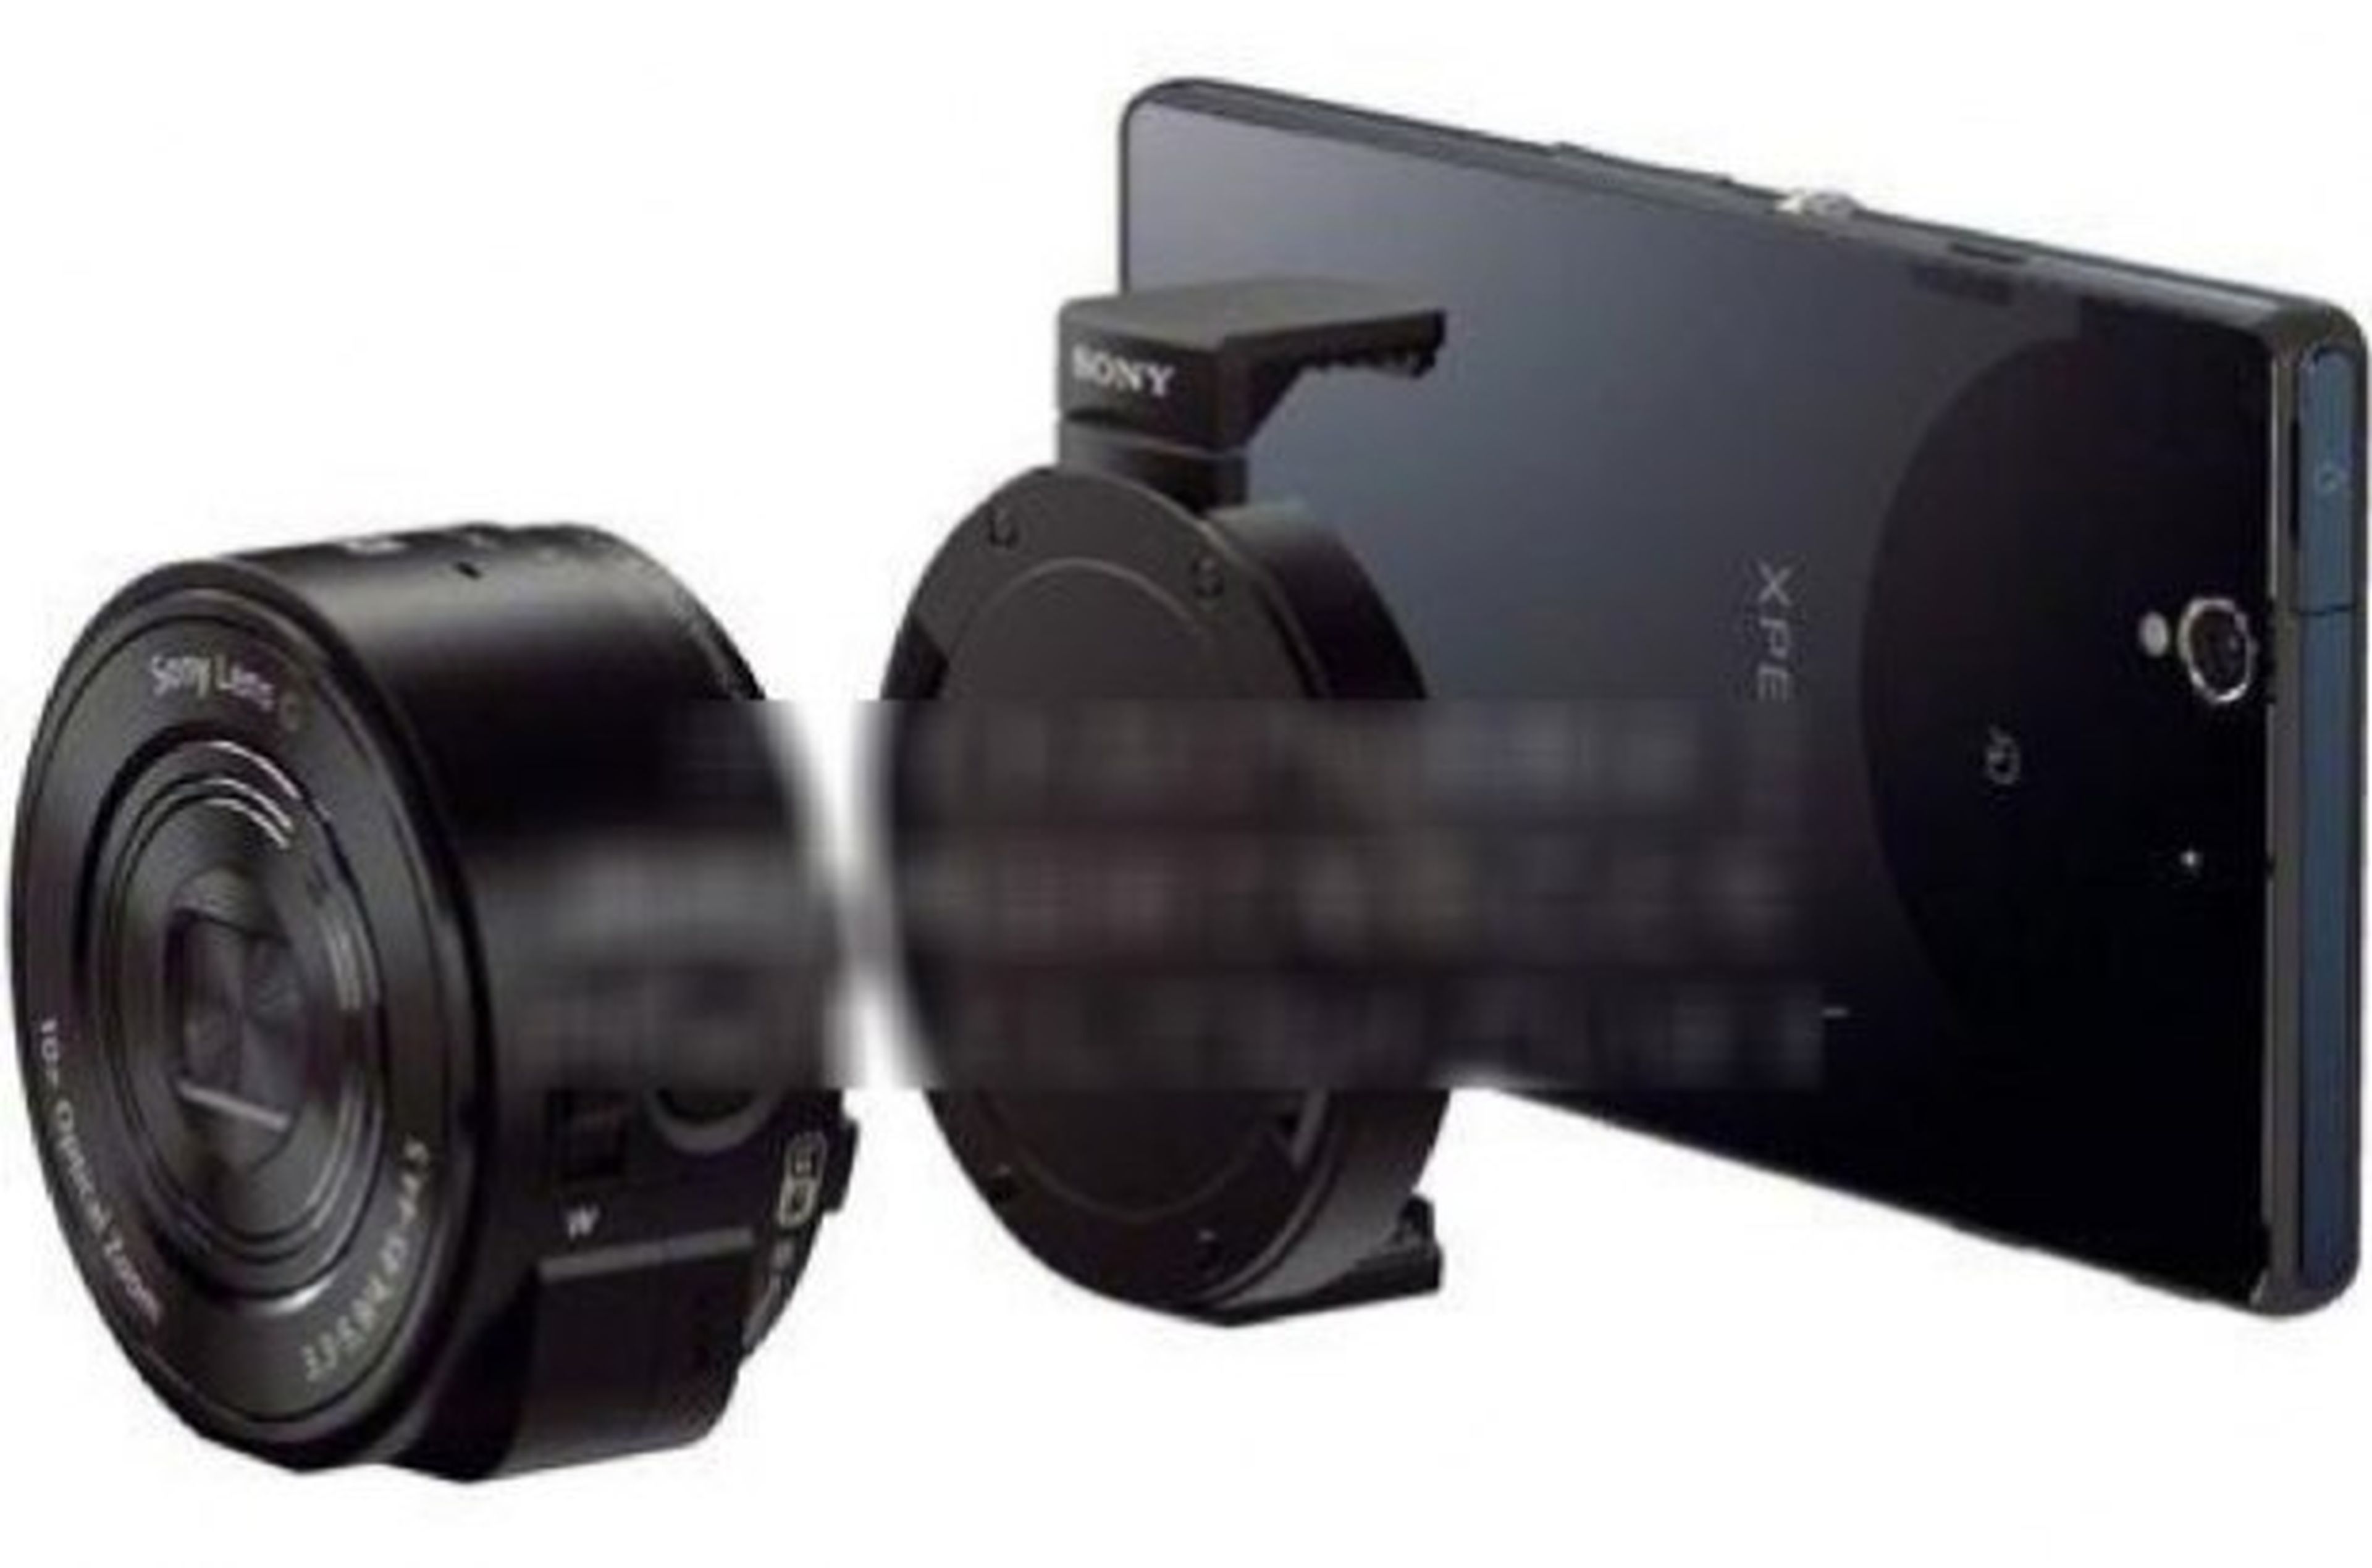 Más sobre el Sony Smart Shot antes del anuncio en IFA 2013